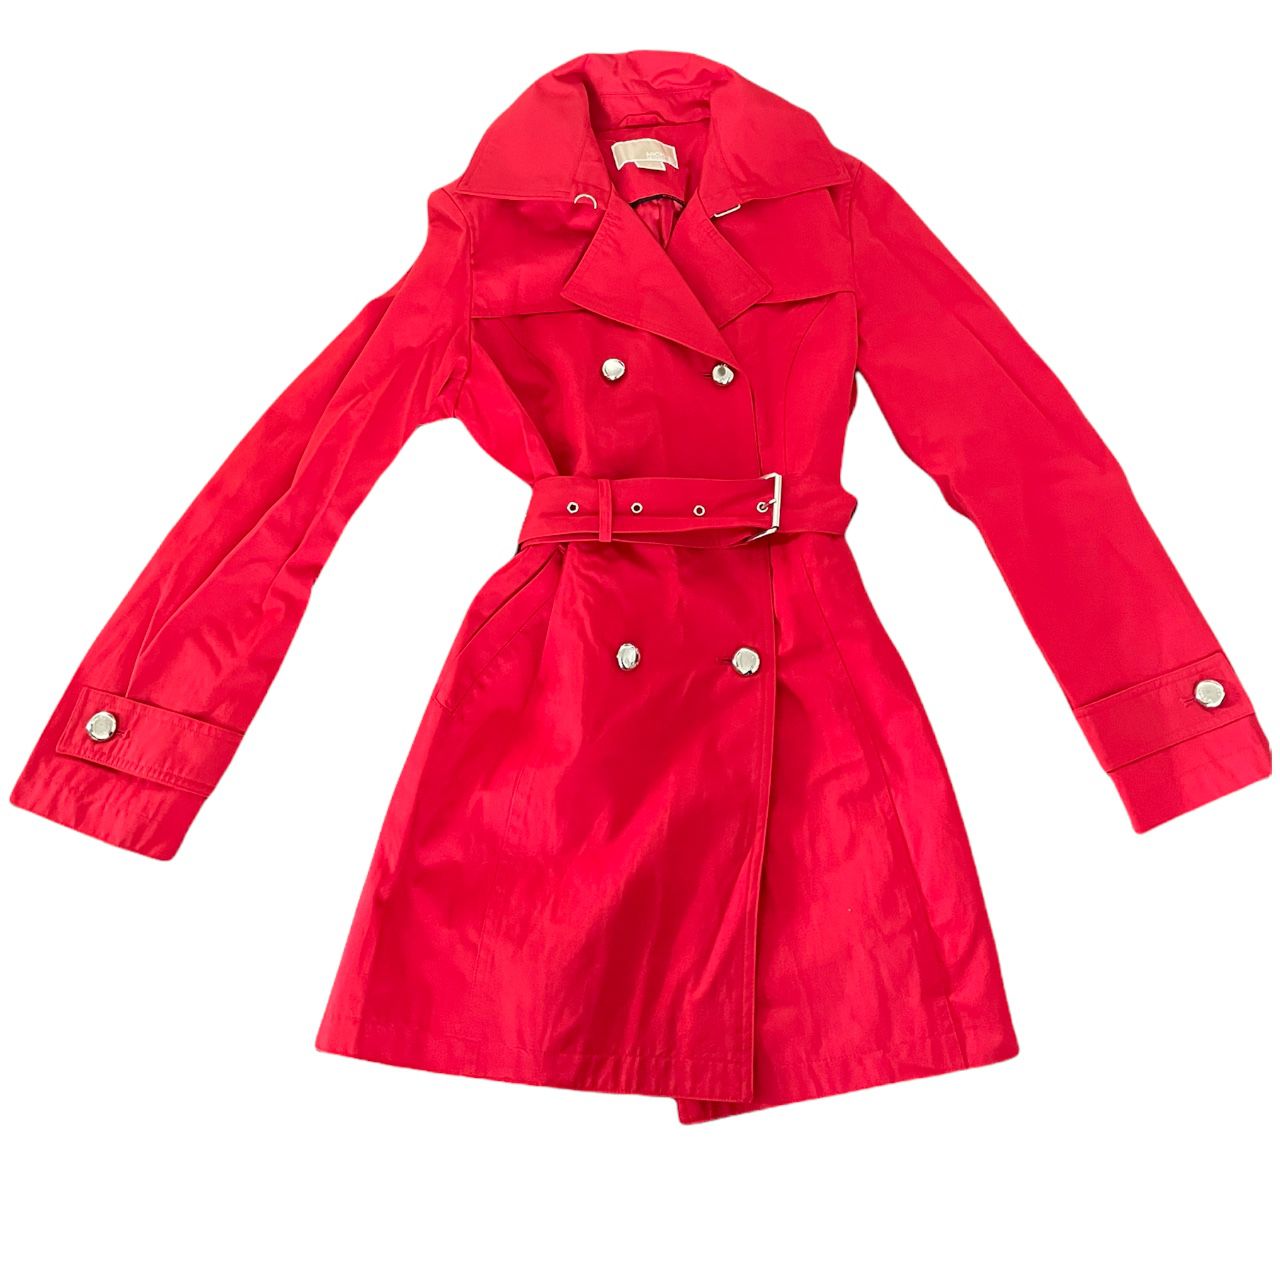 Michael Kors Red Raincoat